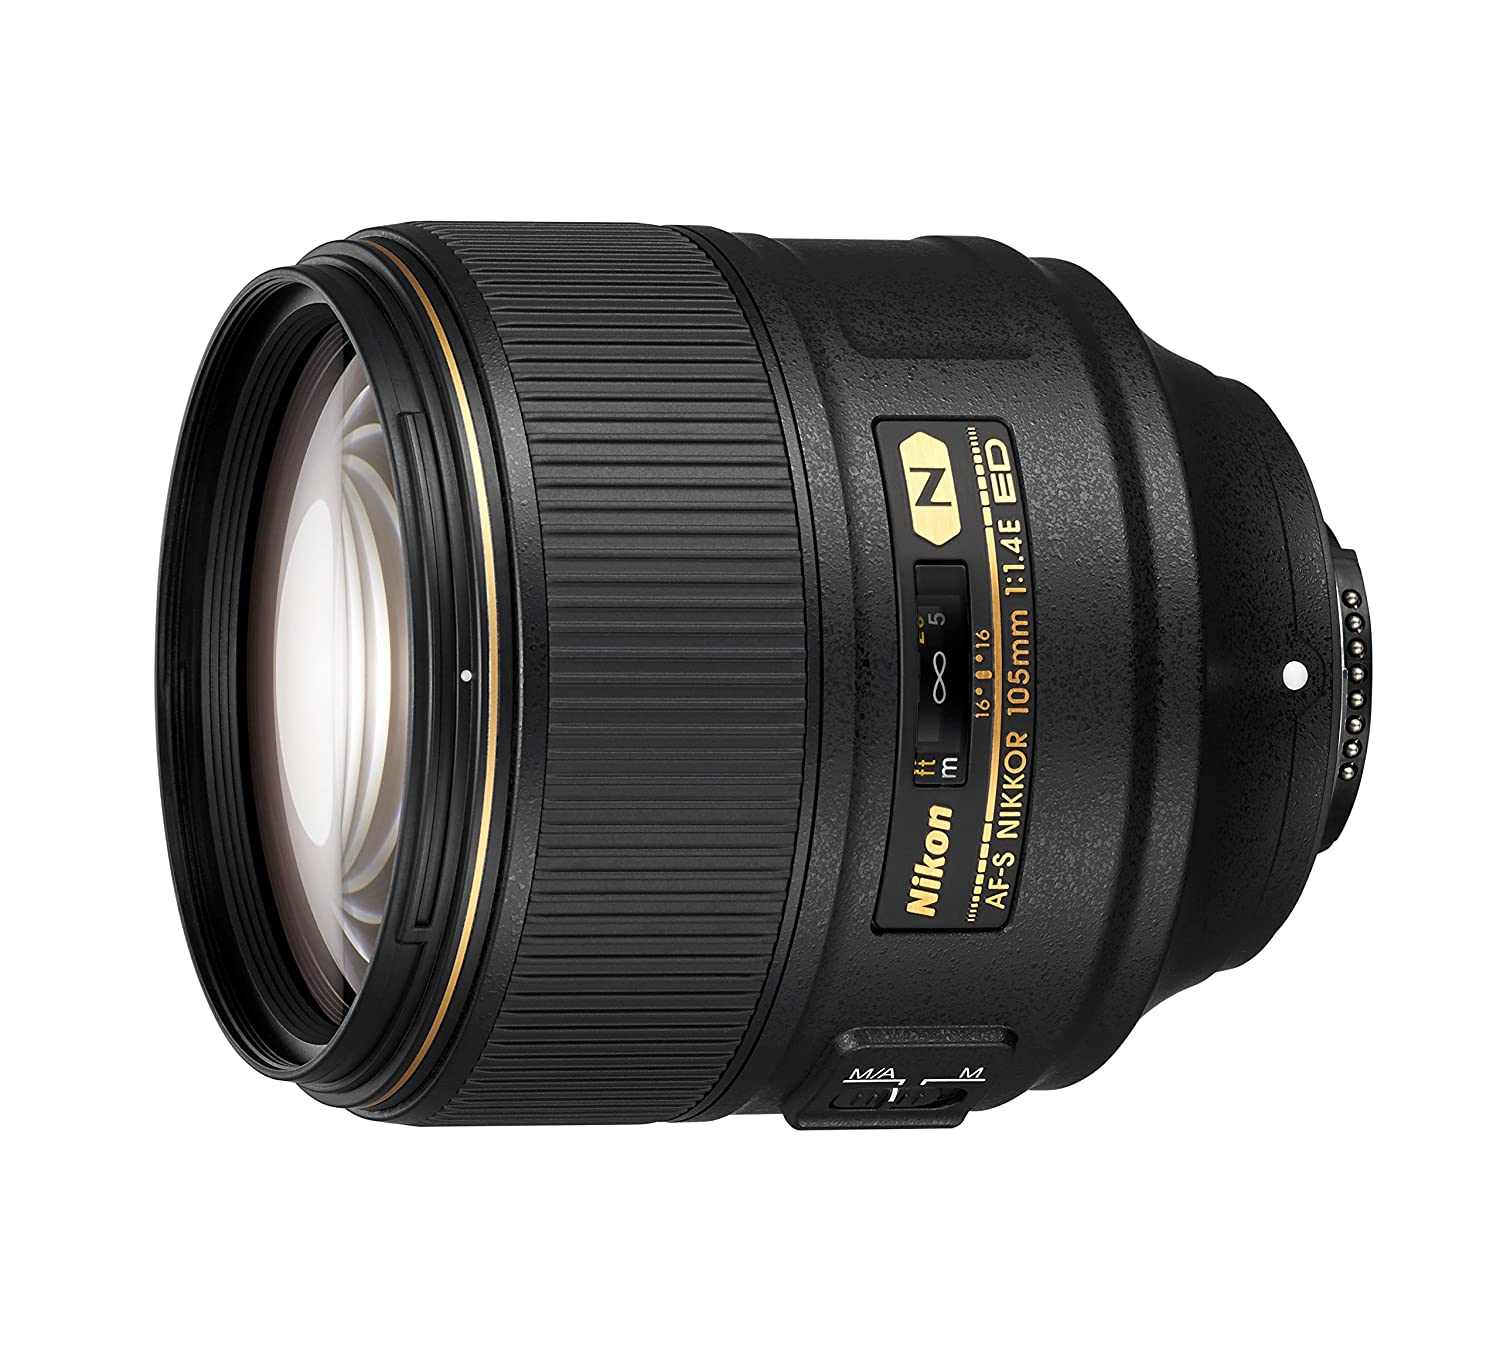 Nikon AF-S FX Nikkor 105 mm f/1.4 ED Lens with Auto Focus (Black)